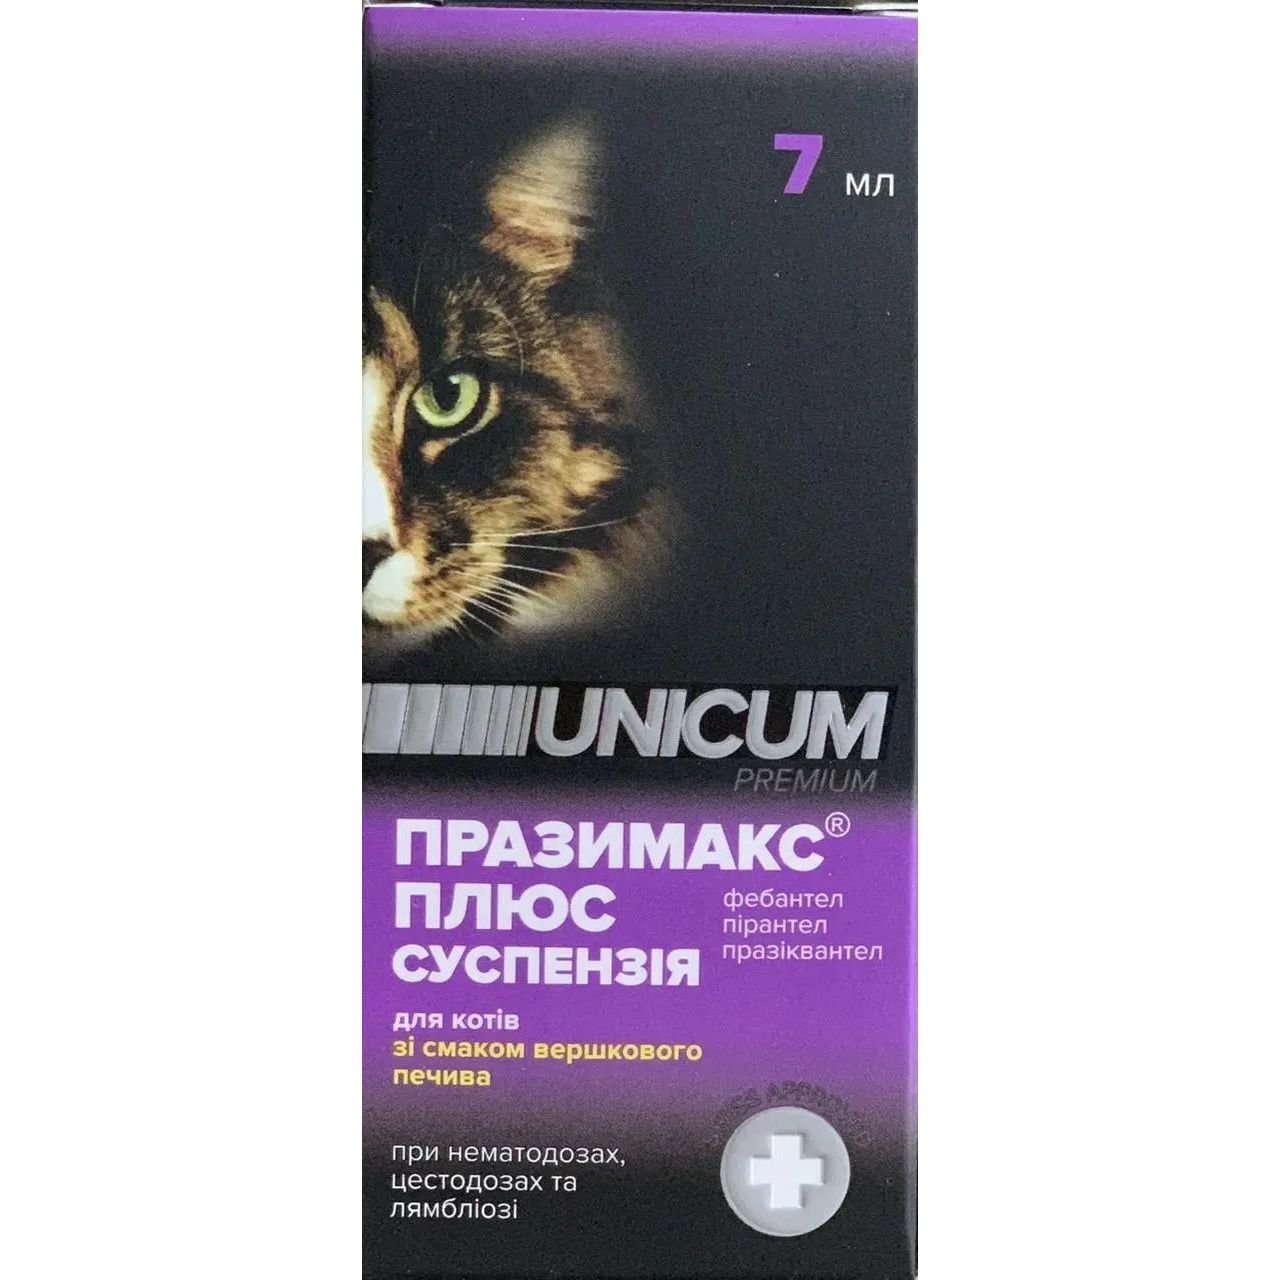 Суспензія Unicum Празімак плюс для котів, 7 мл - фото 1